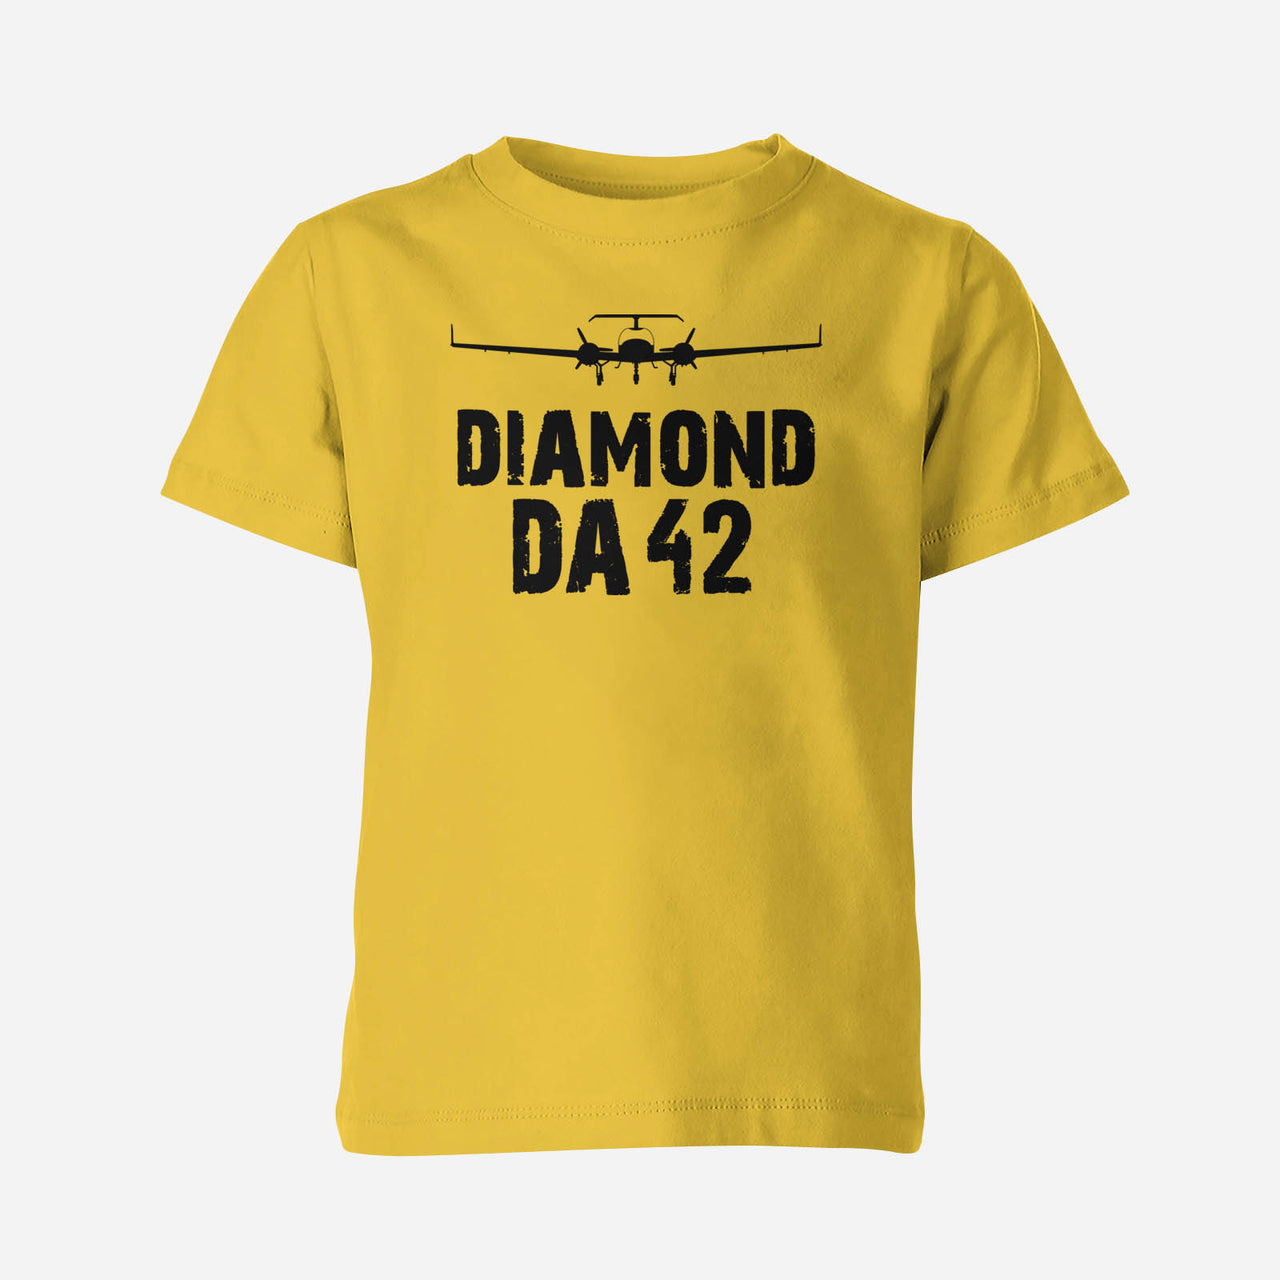 Diamond DA42 & Plane Designed Children T-Shirts